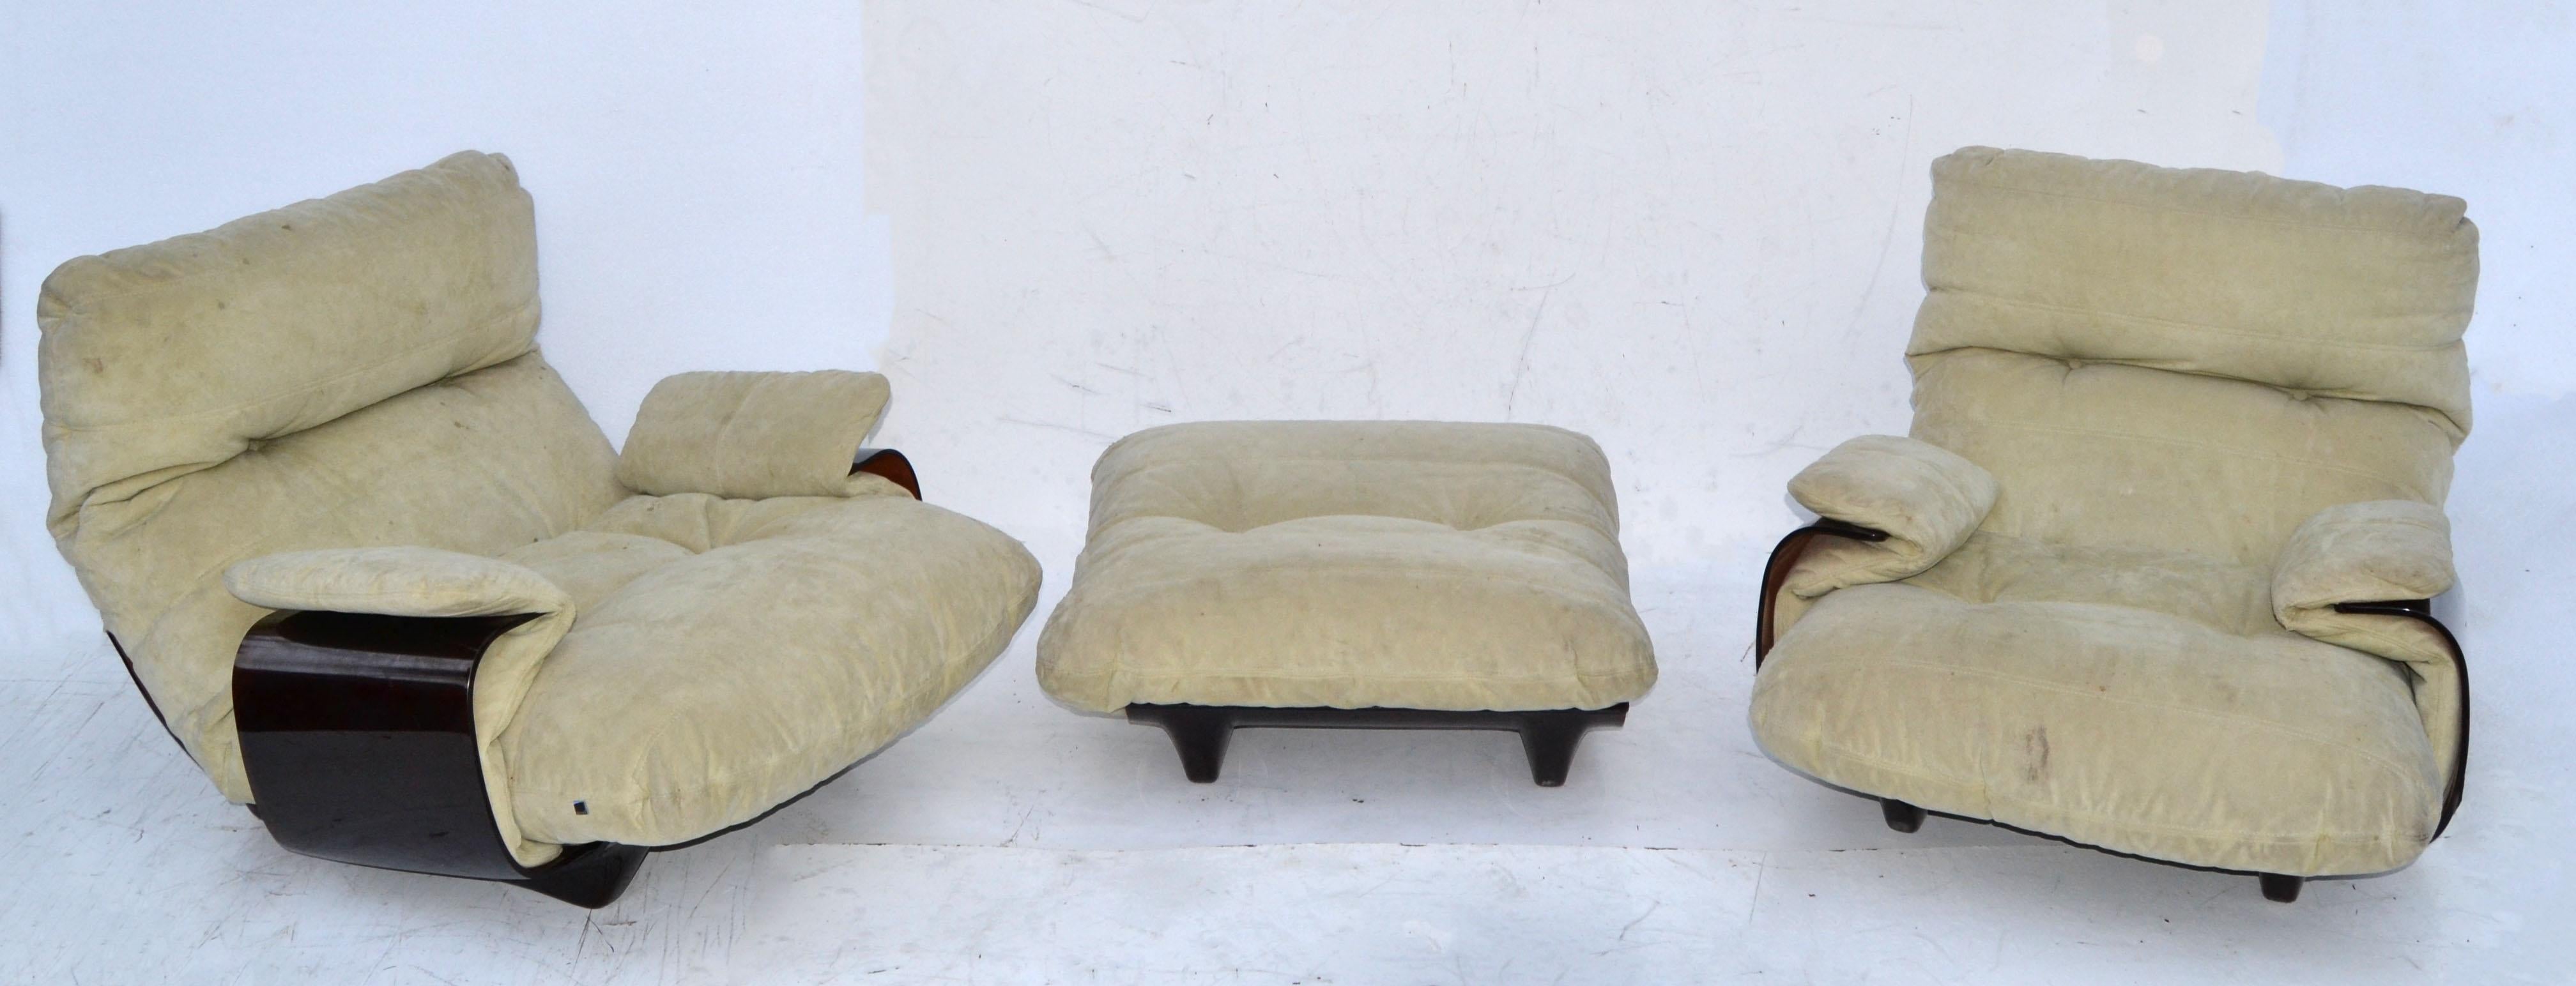 Nous proposons une paire de chaises longues 'Marsala' de style moderne du milieu du siècle dernier, avec un ottoman assorti, par Michel Ducaroy pour Ligne Roset. 
La chaise est dotée d'une base incurvée en Lucite transparente de couleur bronze et a